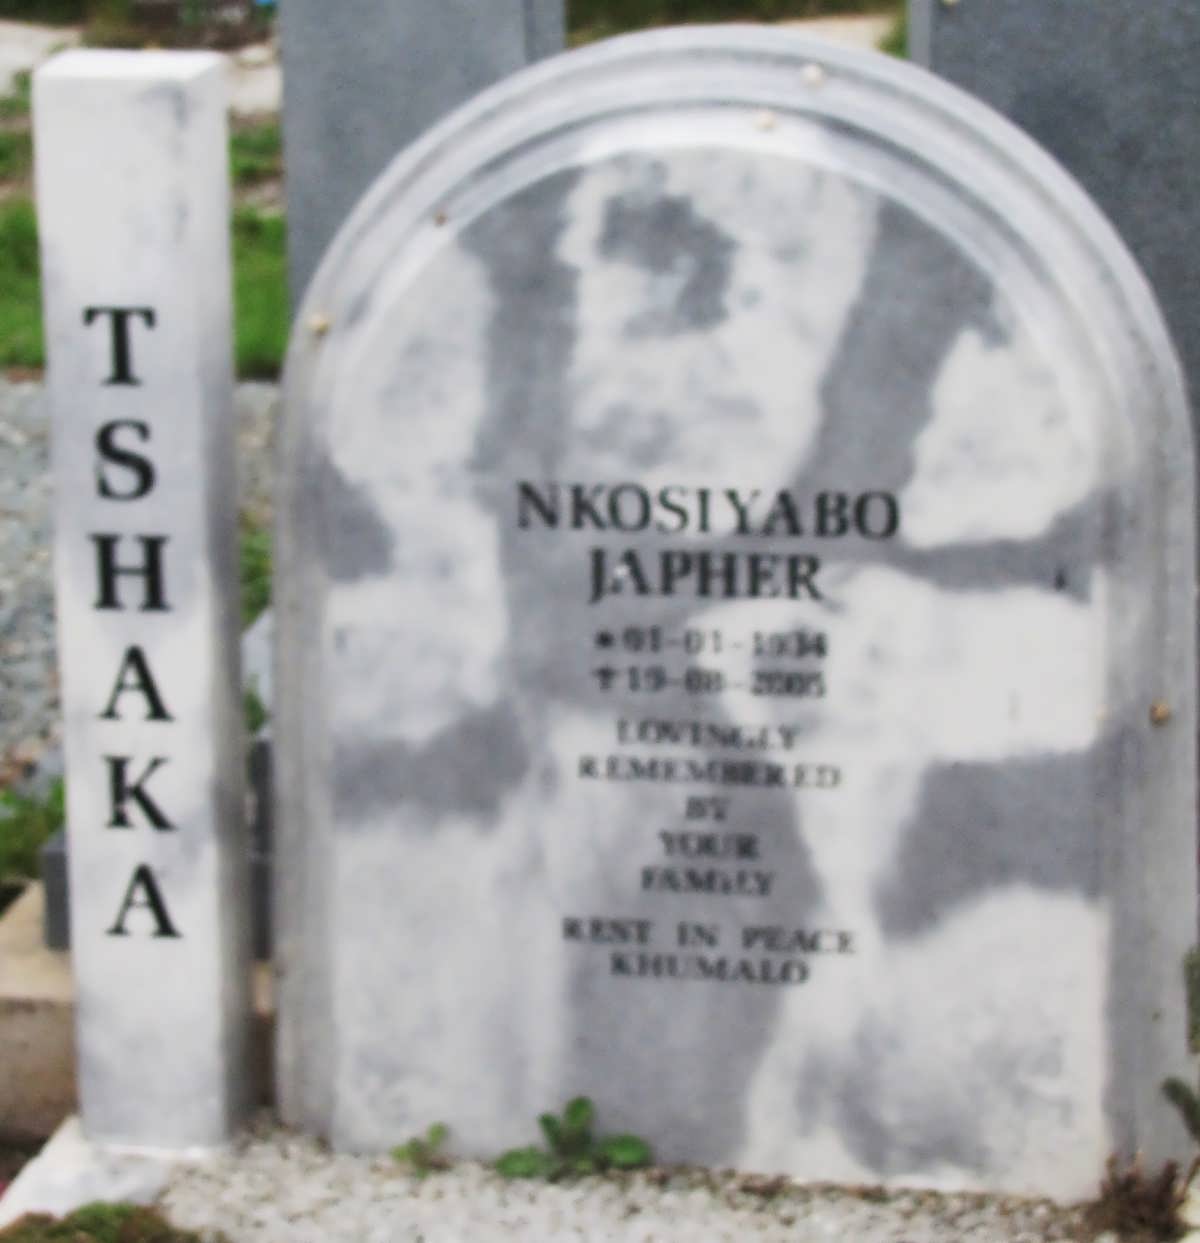 TSHAKA Nkosiyabo Japher 1934-2005